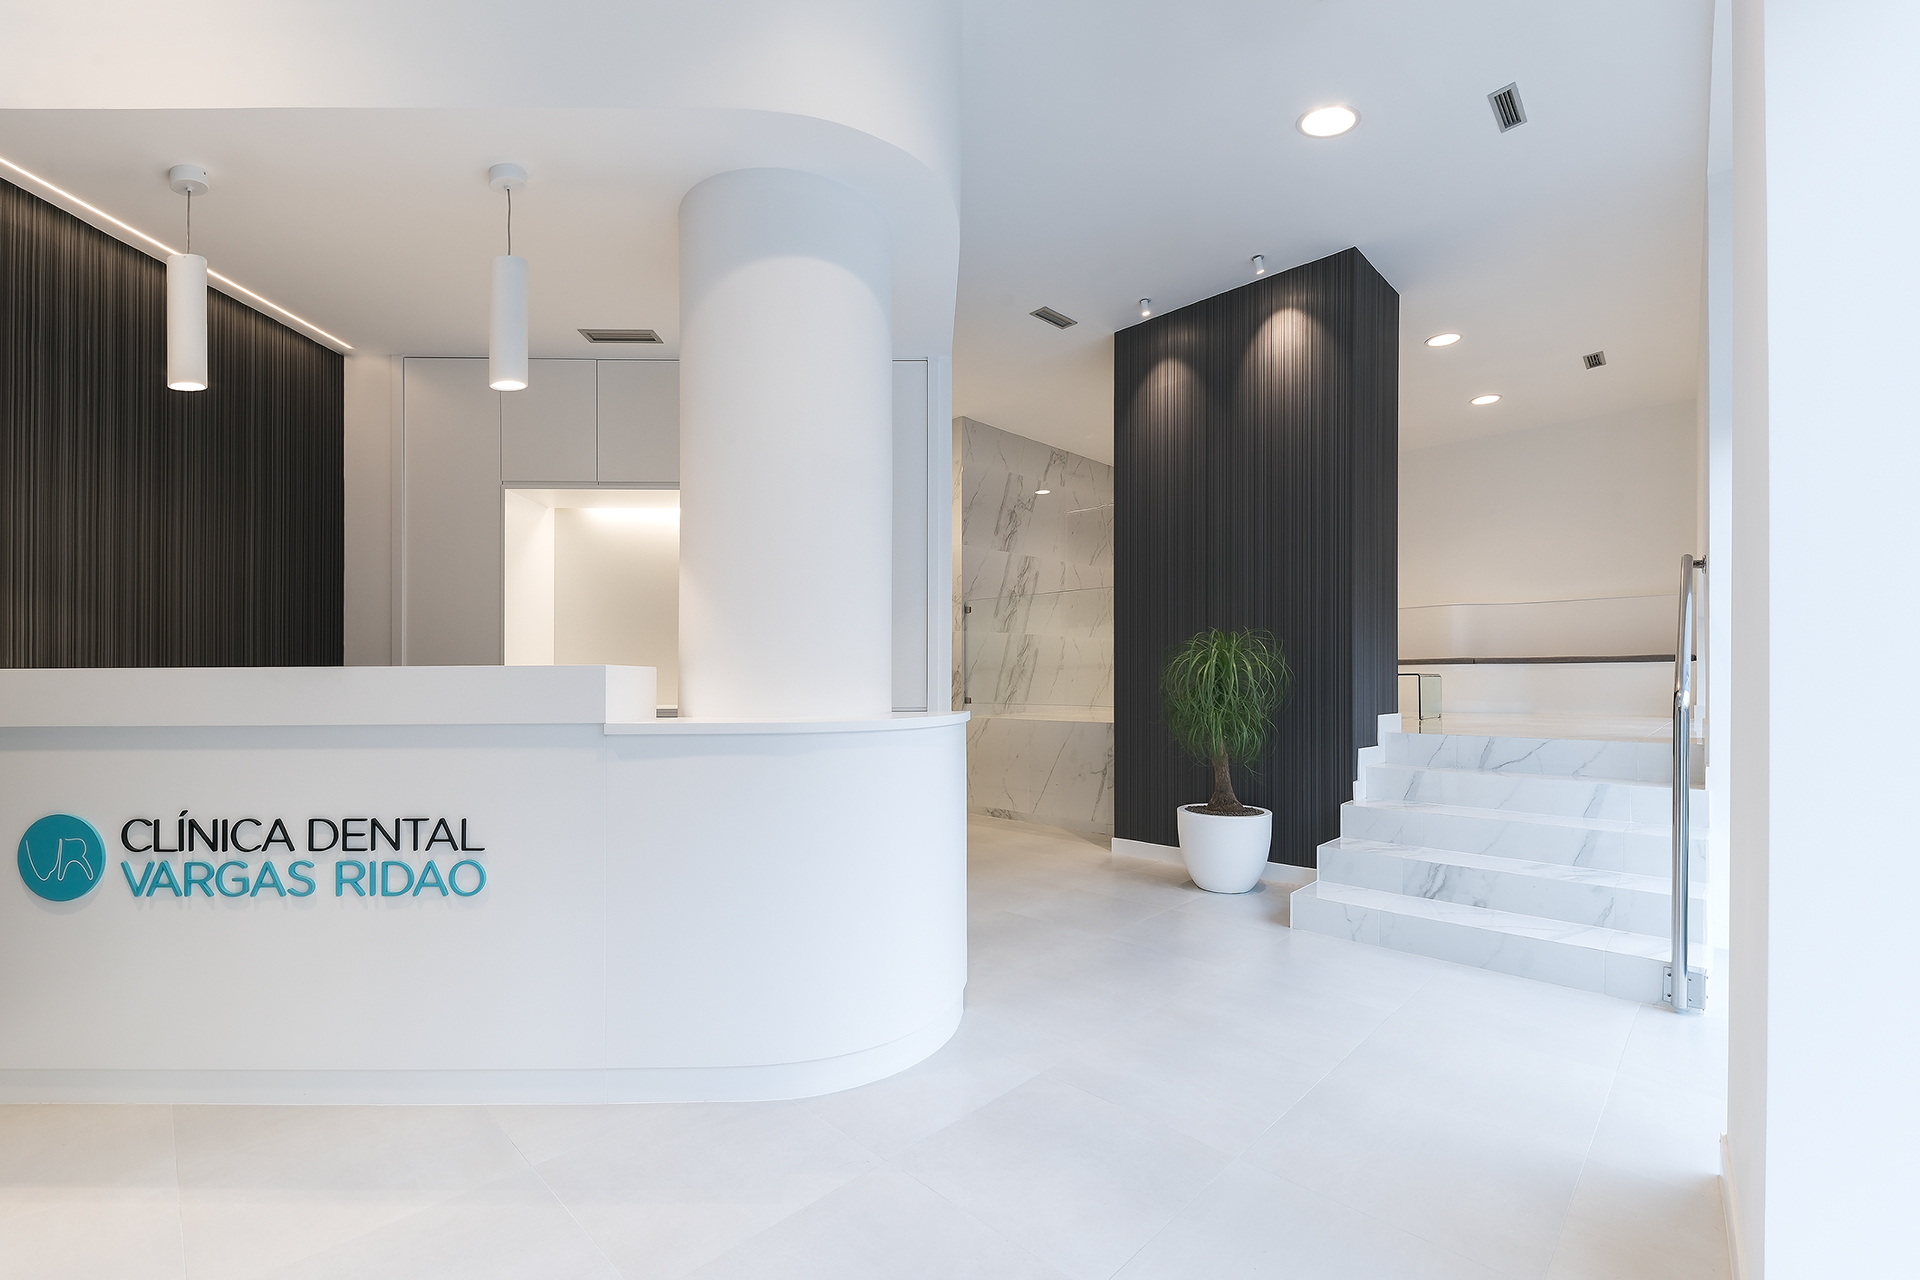 Para la el proyecto de obra nueva de la clínica dental se apostó por crear un diseño que transmitiese elegancia y limpieza